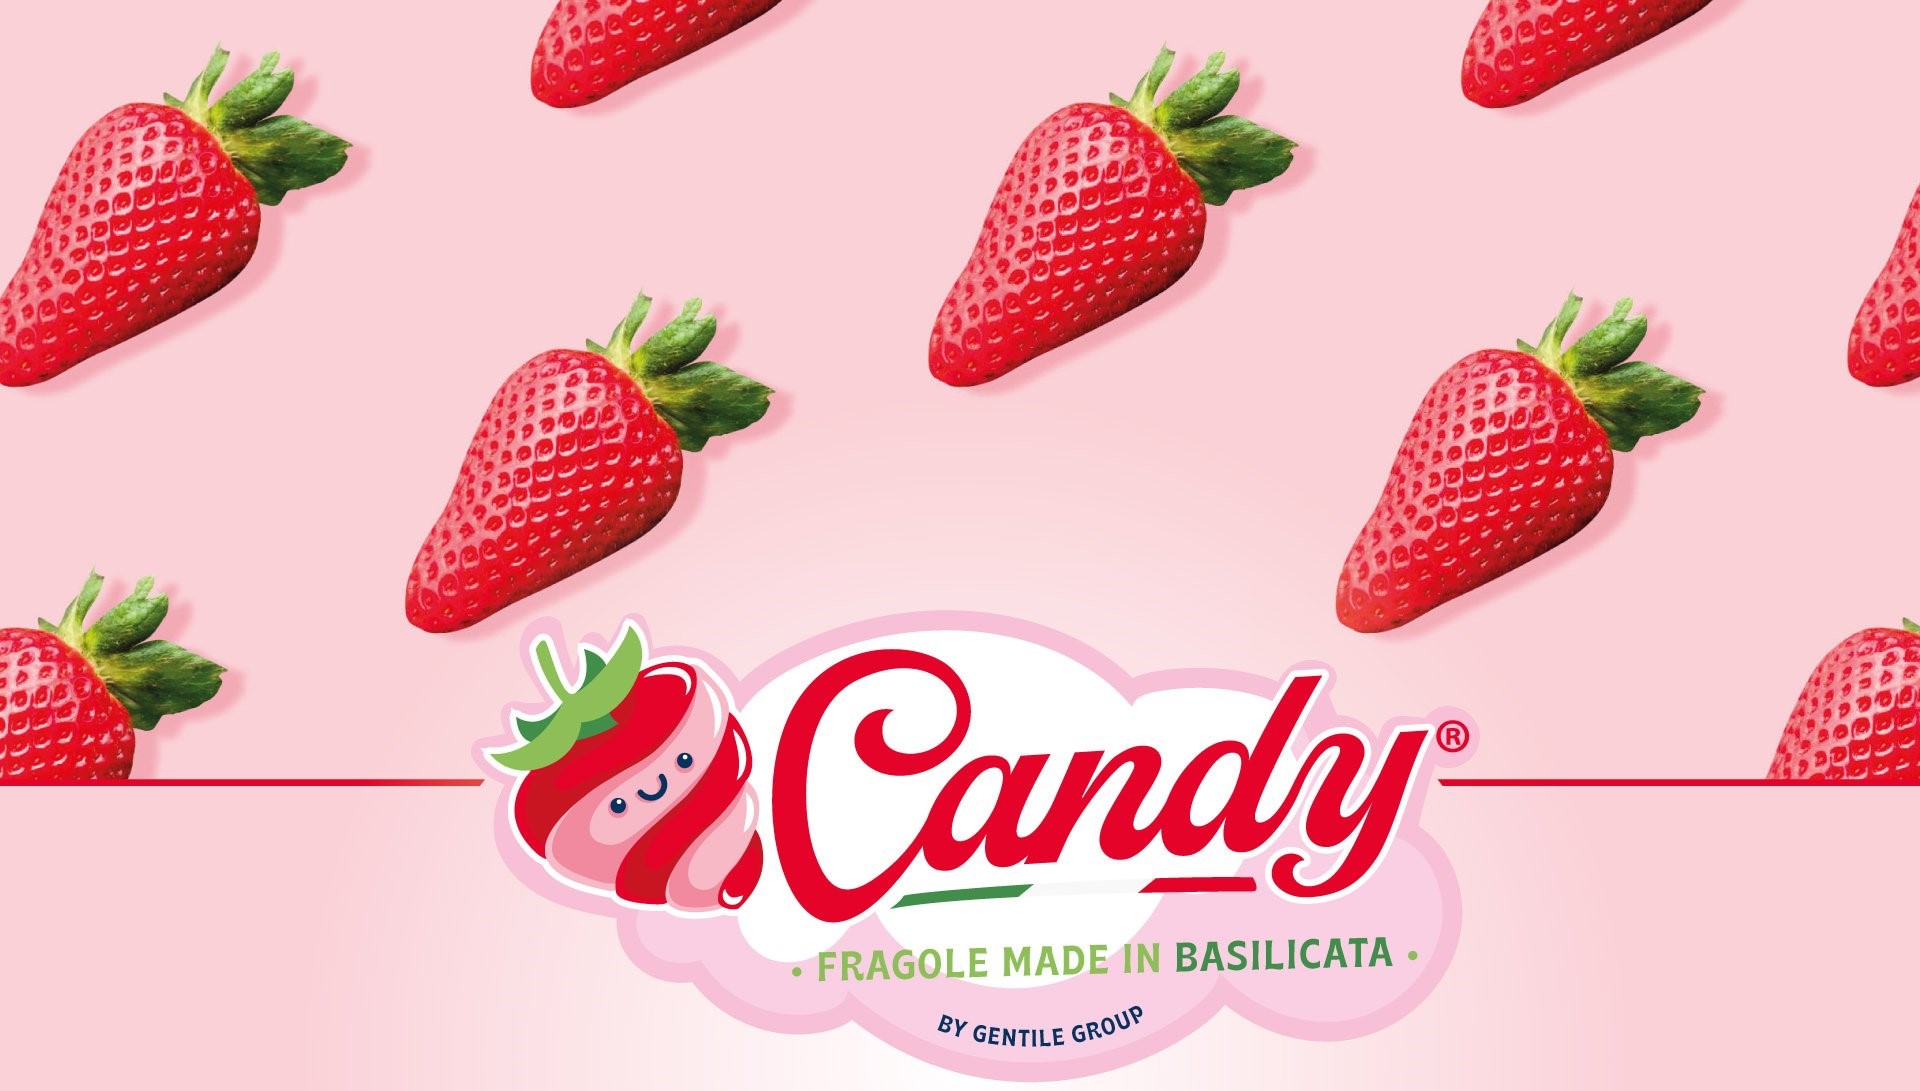 Căpșune de lux: ambalate în cutii care imită pe cele cu bomboane, fructele au adus unui producător italian câștiguri de peste 150.000 de euro pe hectar